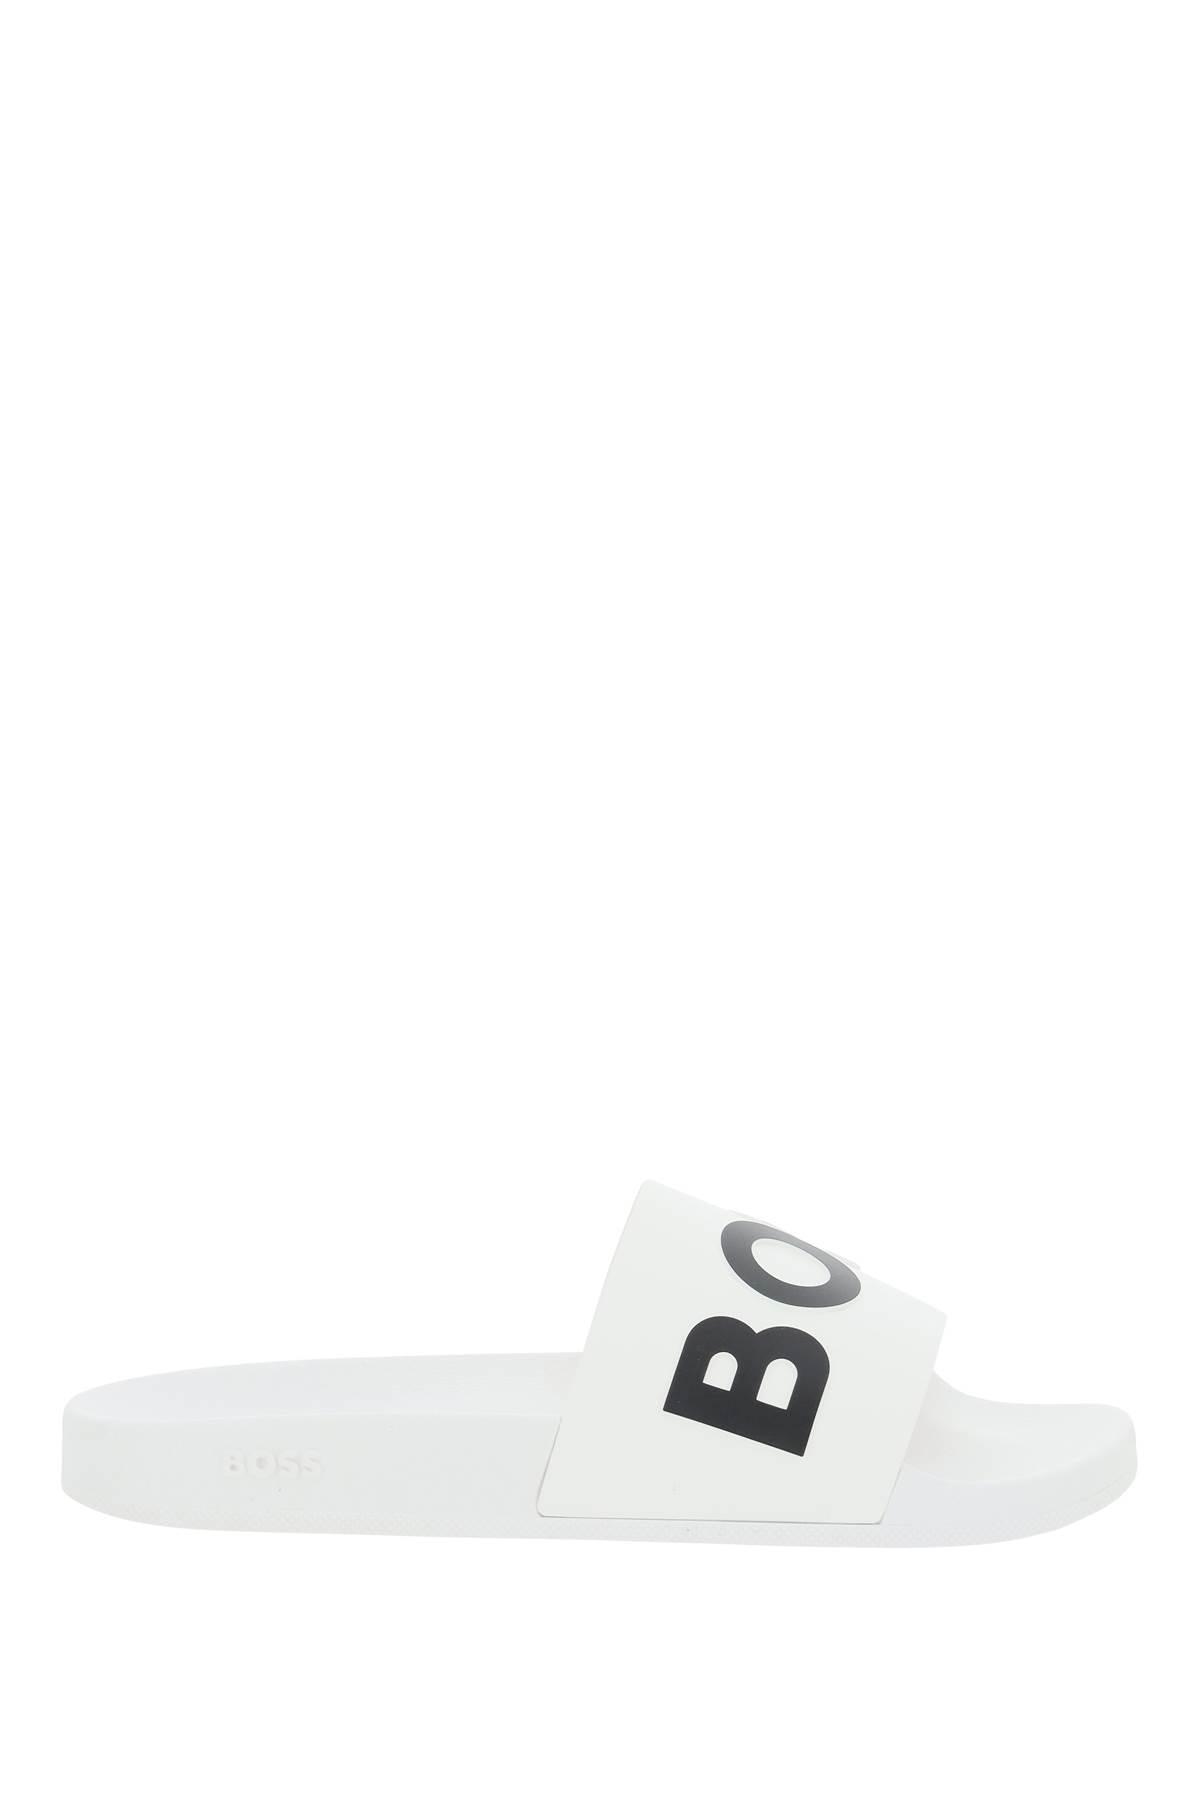 BOSS by HUGO BOSS Slippers With Logo in White for Men | Lyst